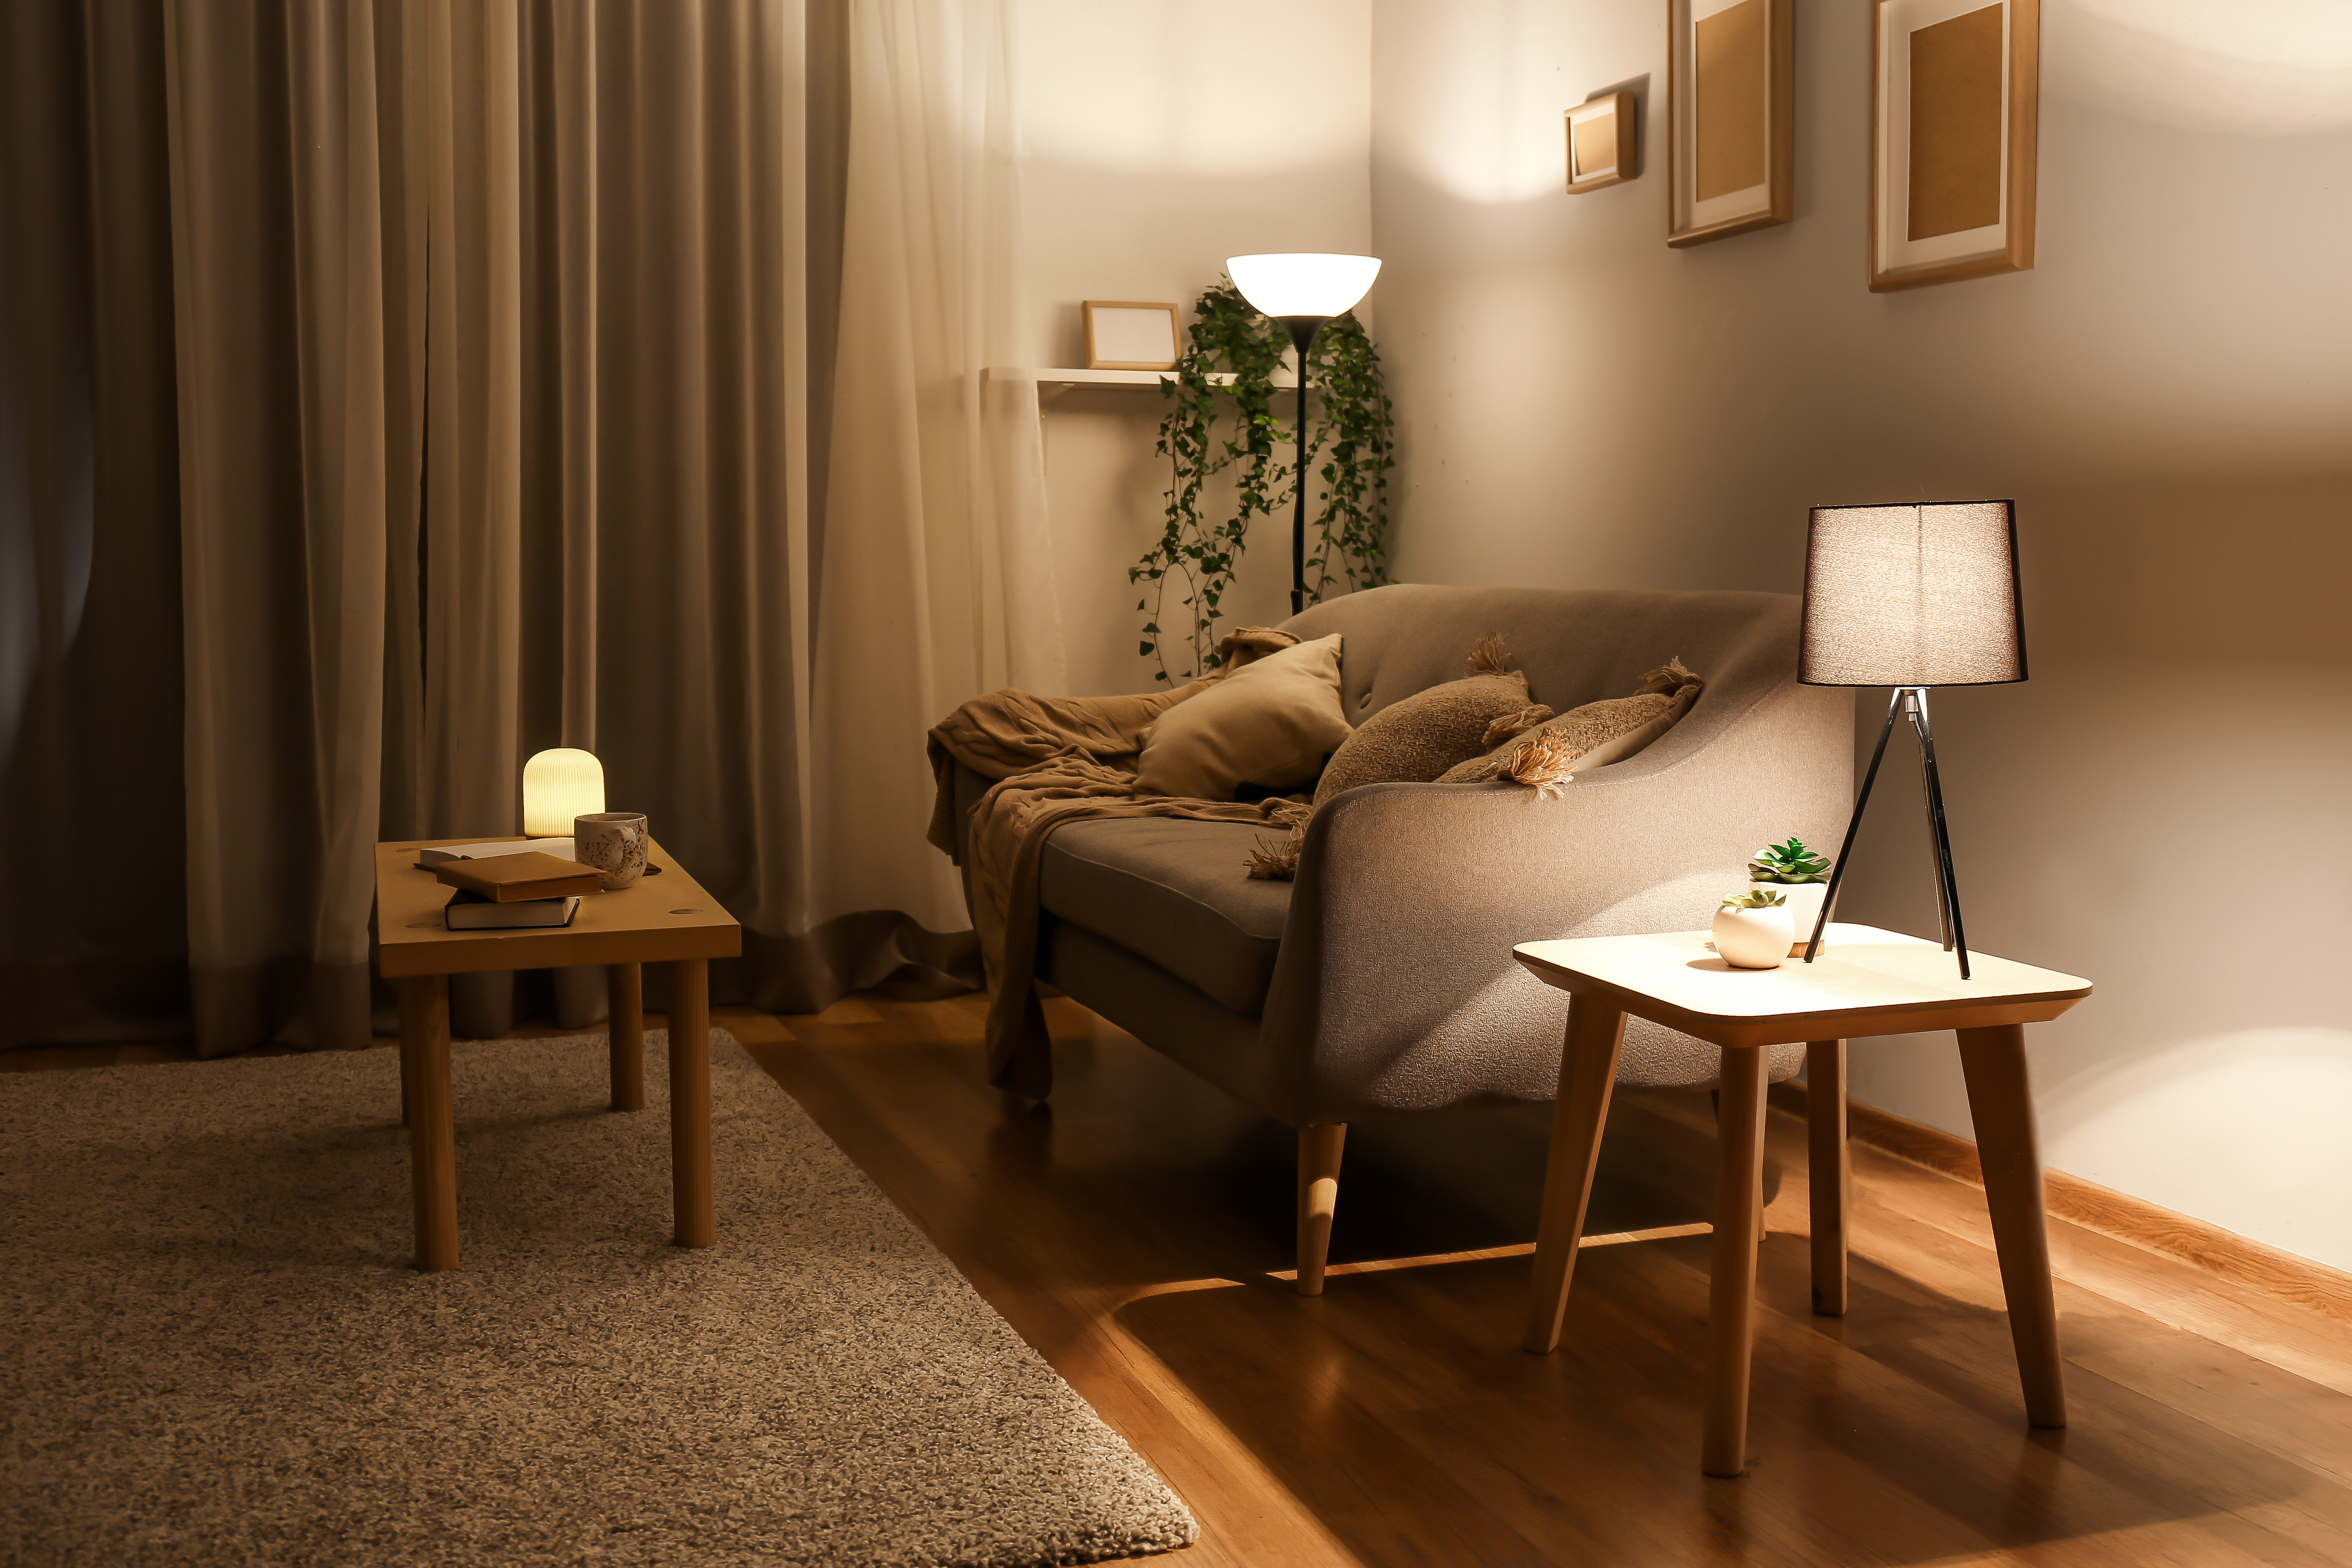 oriëntatie lengte AIDS Zo verlicht je jouw woonkamer optimaal | ID.nl